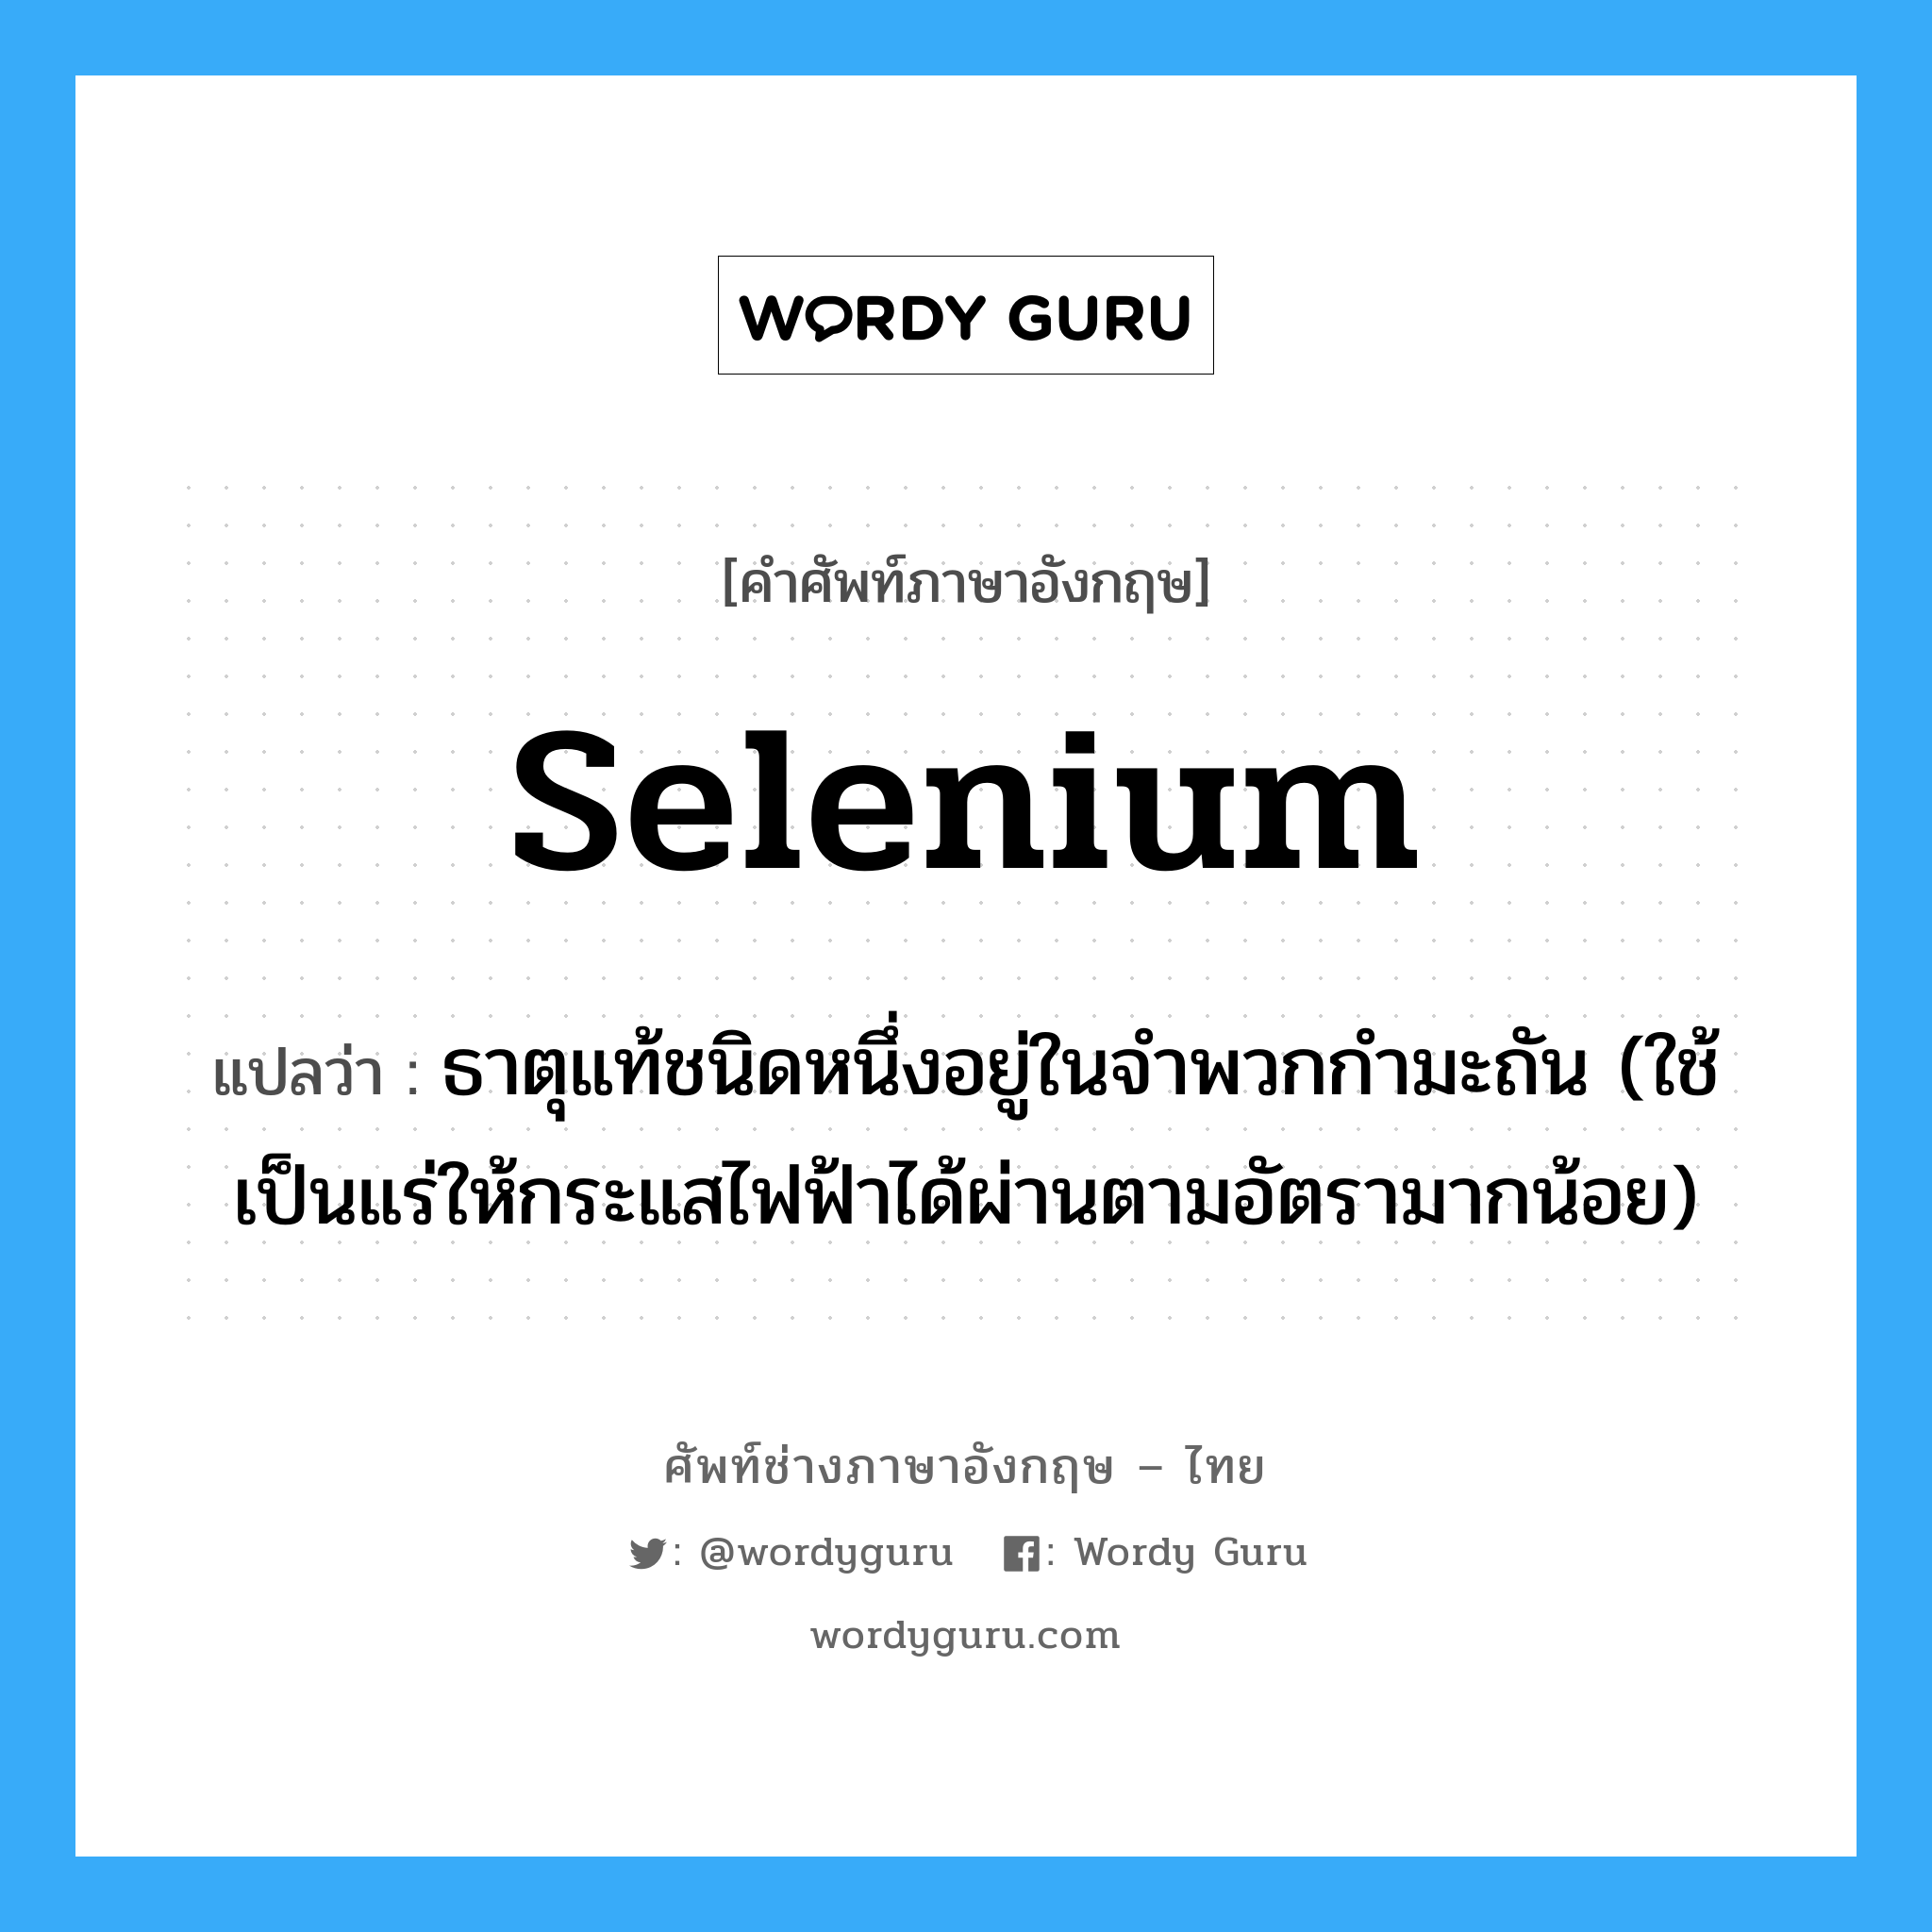 selenium แปลว่า?, คำศัพท์ช่างภาษาอังกฤษ - ไทย selenium คำศัพท์ภาษาอังกฤษ selenium แปลว่า ธาตุแท้ชนิดหนึ่งอยู่ในจำพวกกำมะถัน (ใช้เป็นแร่ให้กระแสไฟฟ้าได้ผ่านตามอัตรามากน้อย)